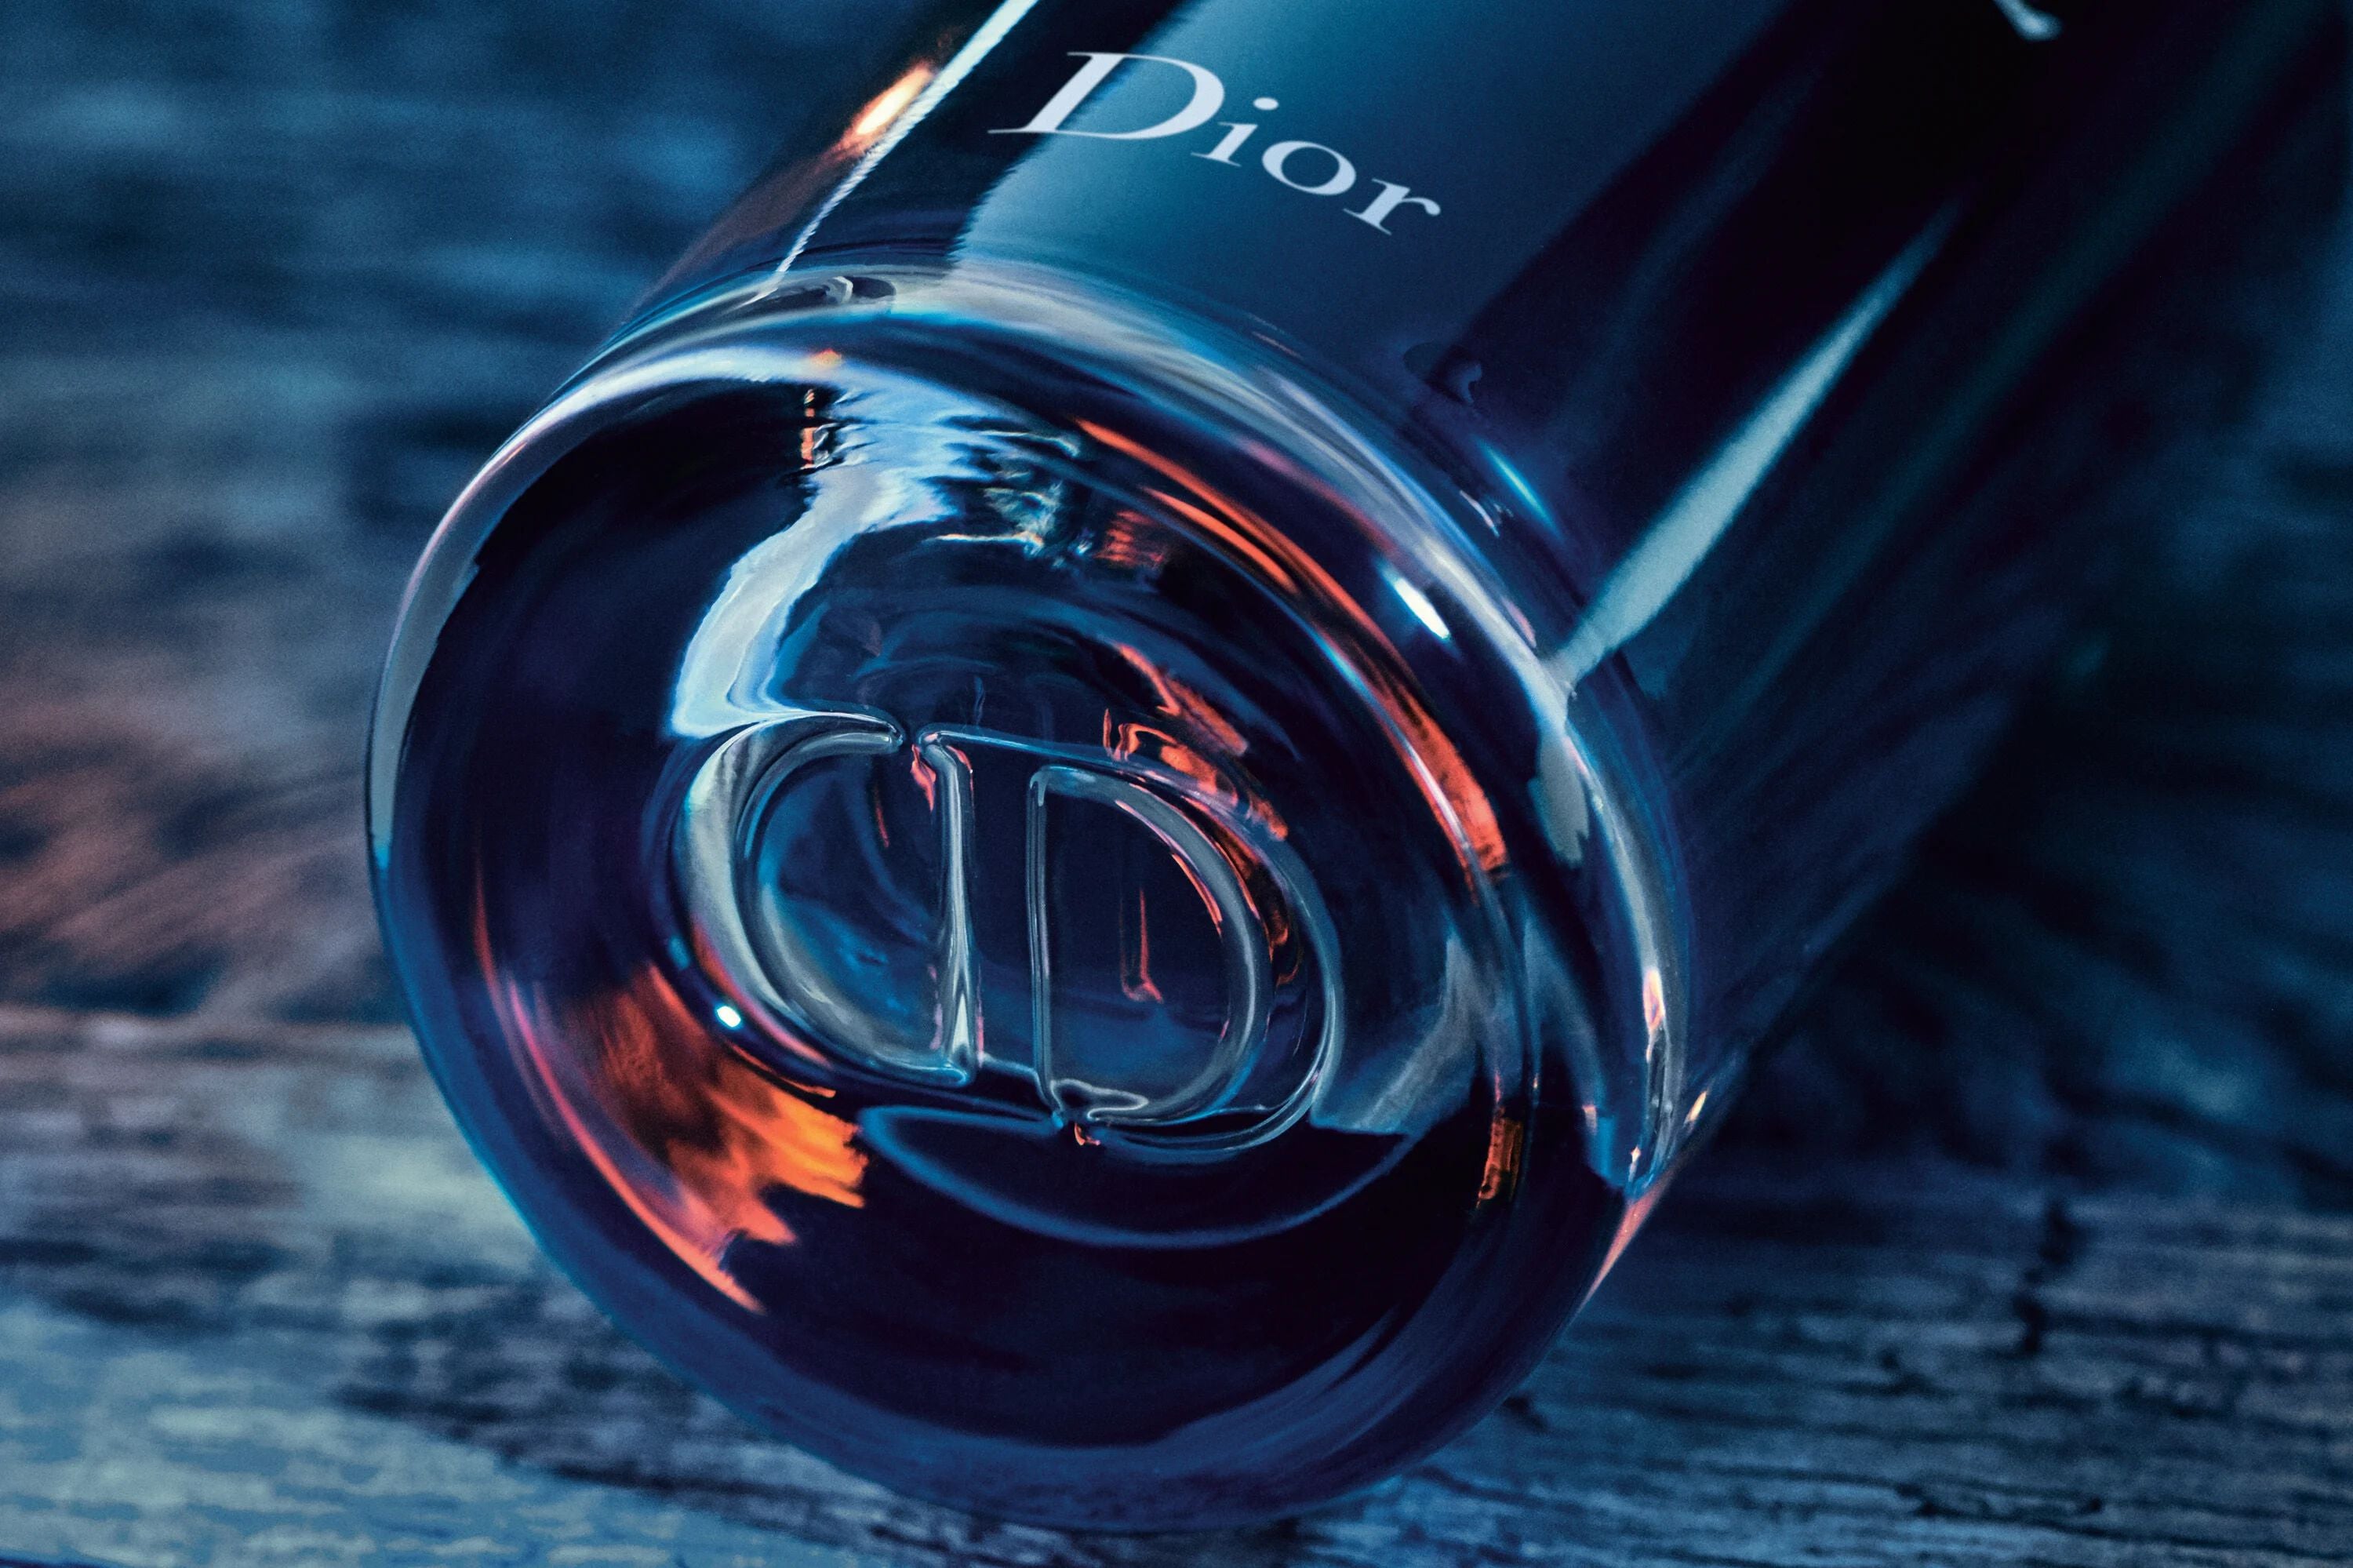 Dior Sauvage Elixir Eau De Parfum